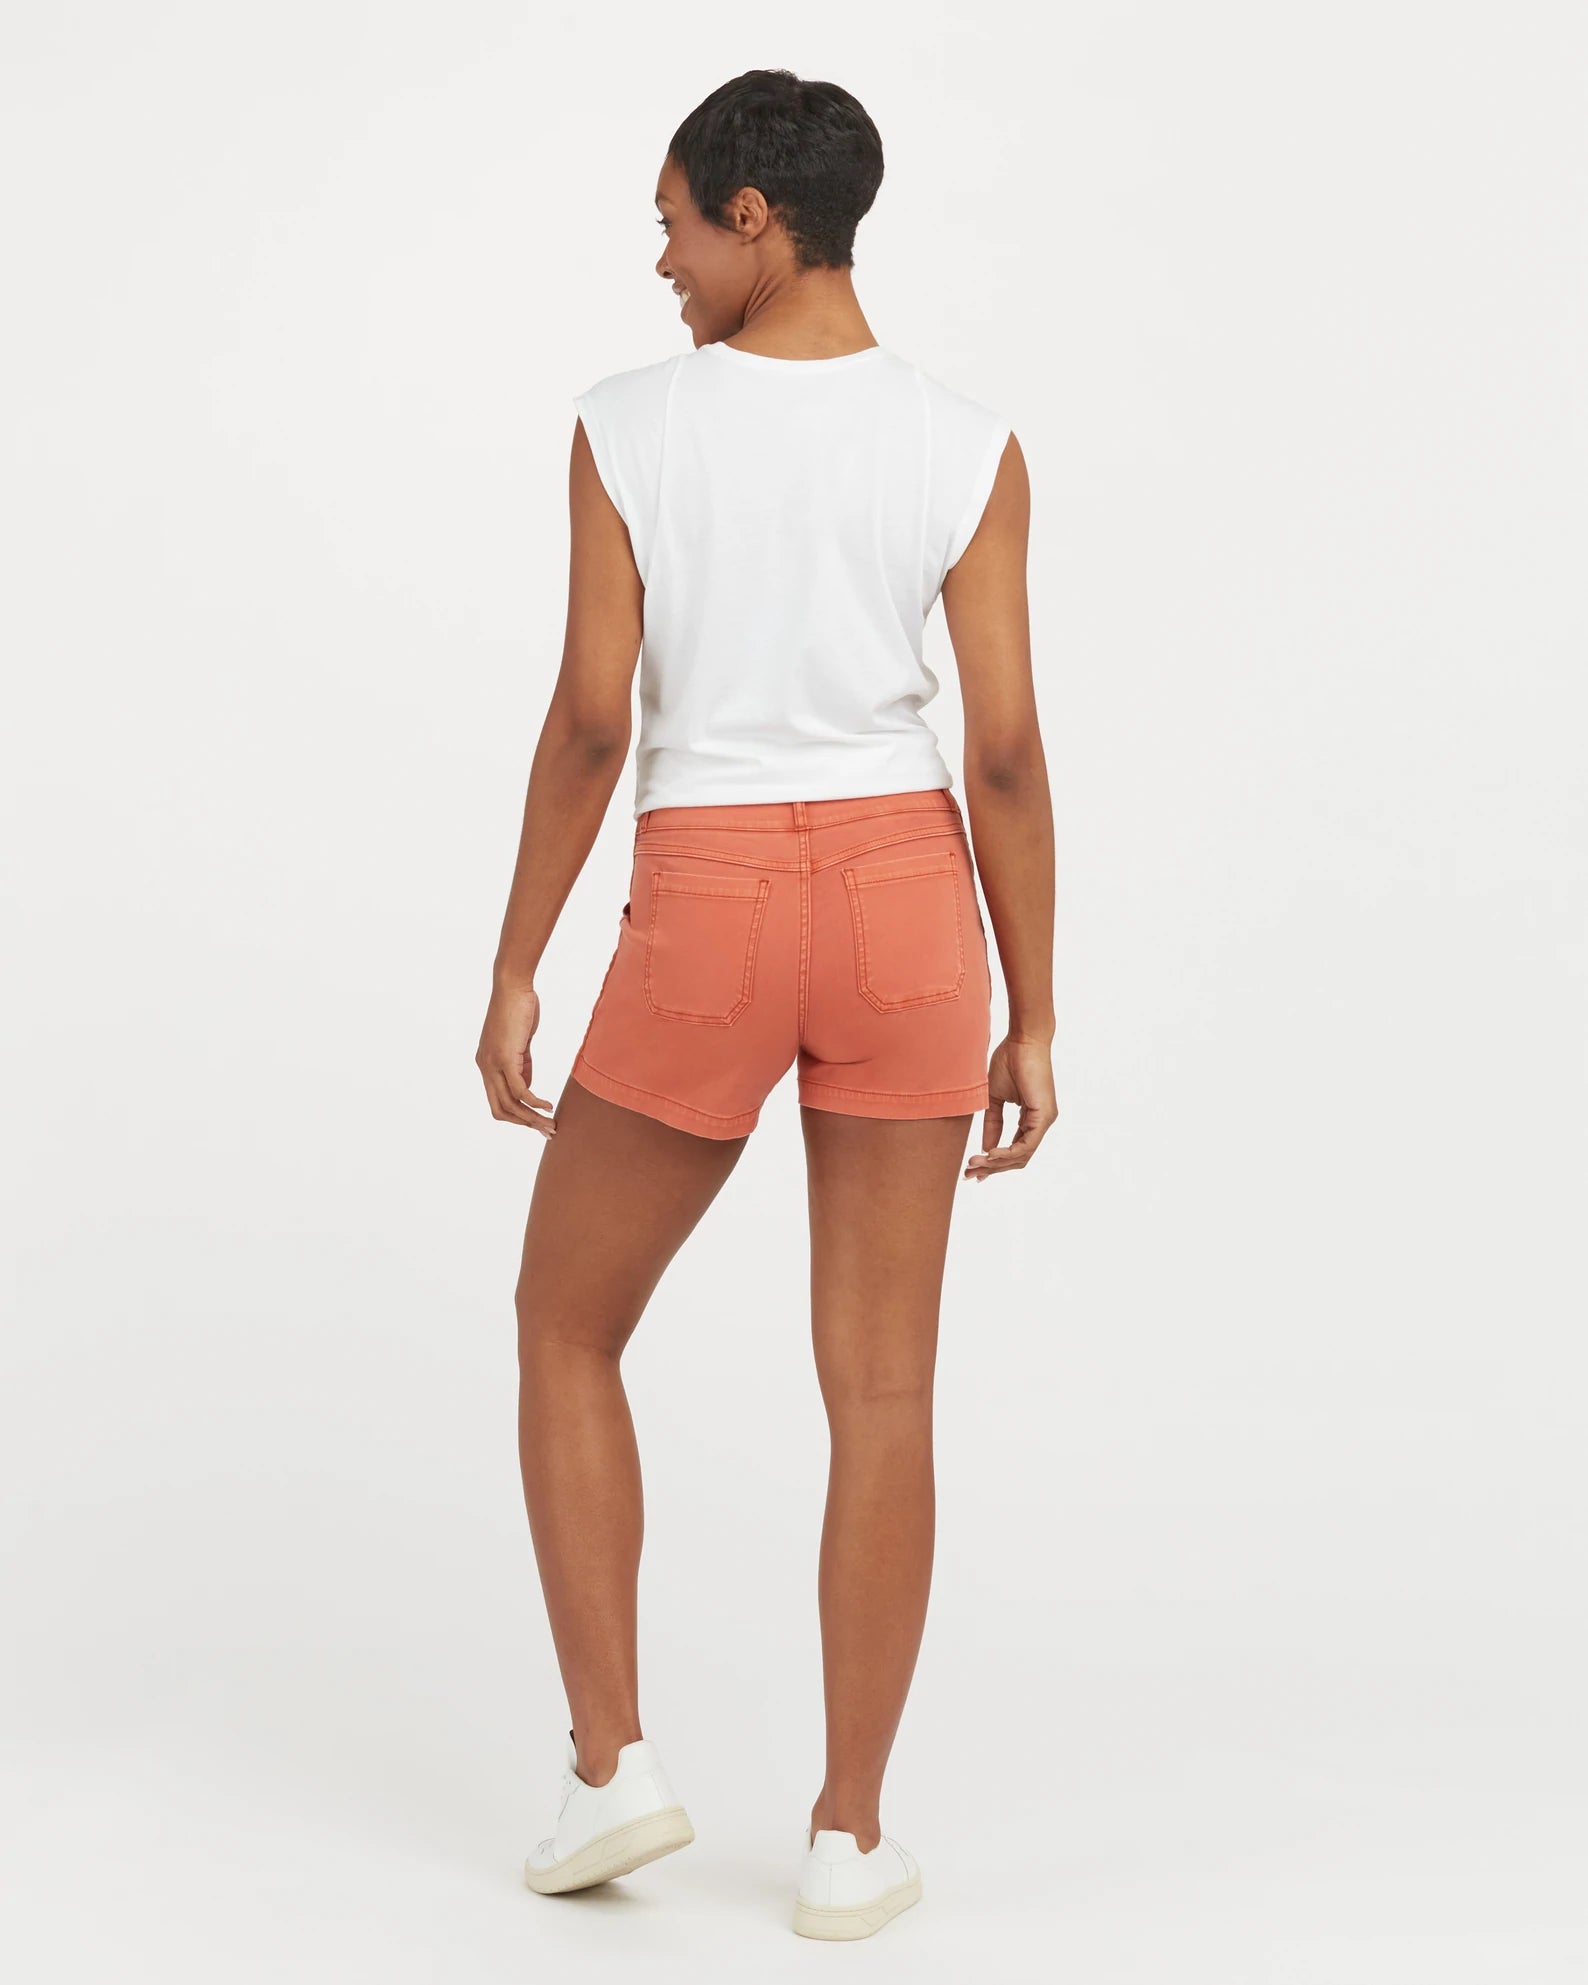 SPANX - Stretch Twill Shorts, 6 - Size S